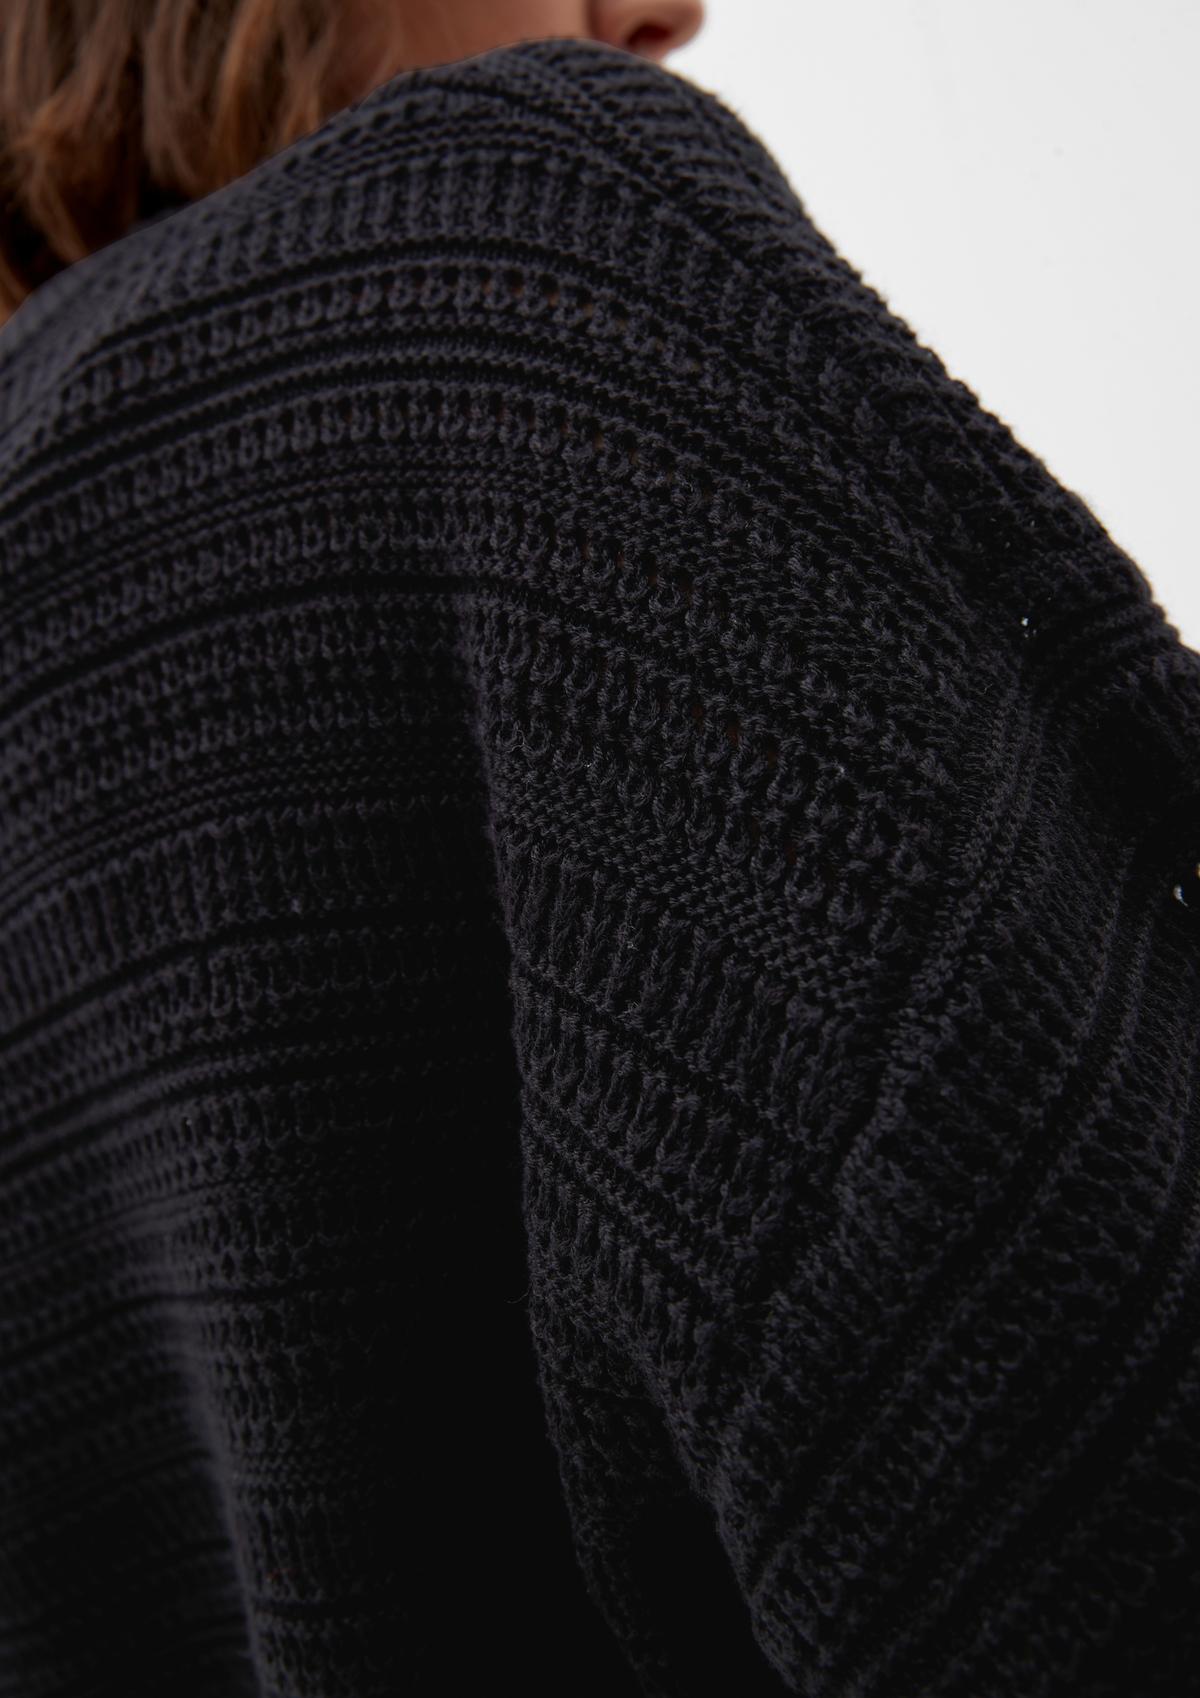 s.Oliver Cotton blend knitted jumper